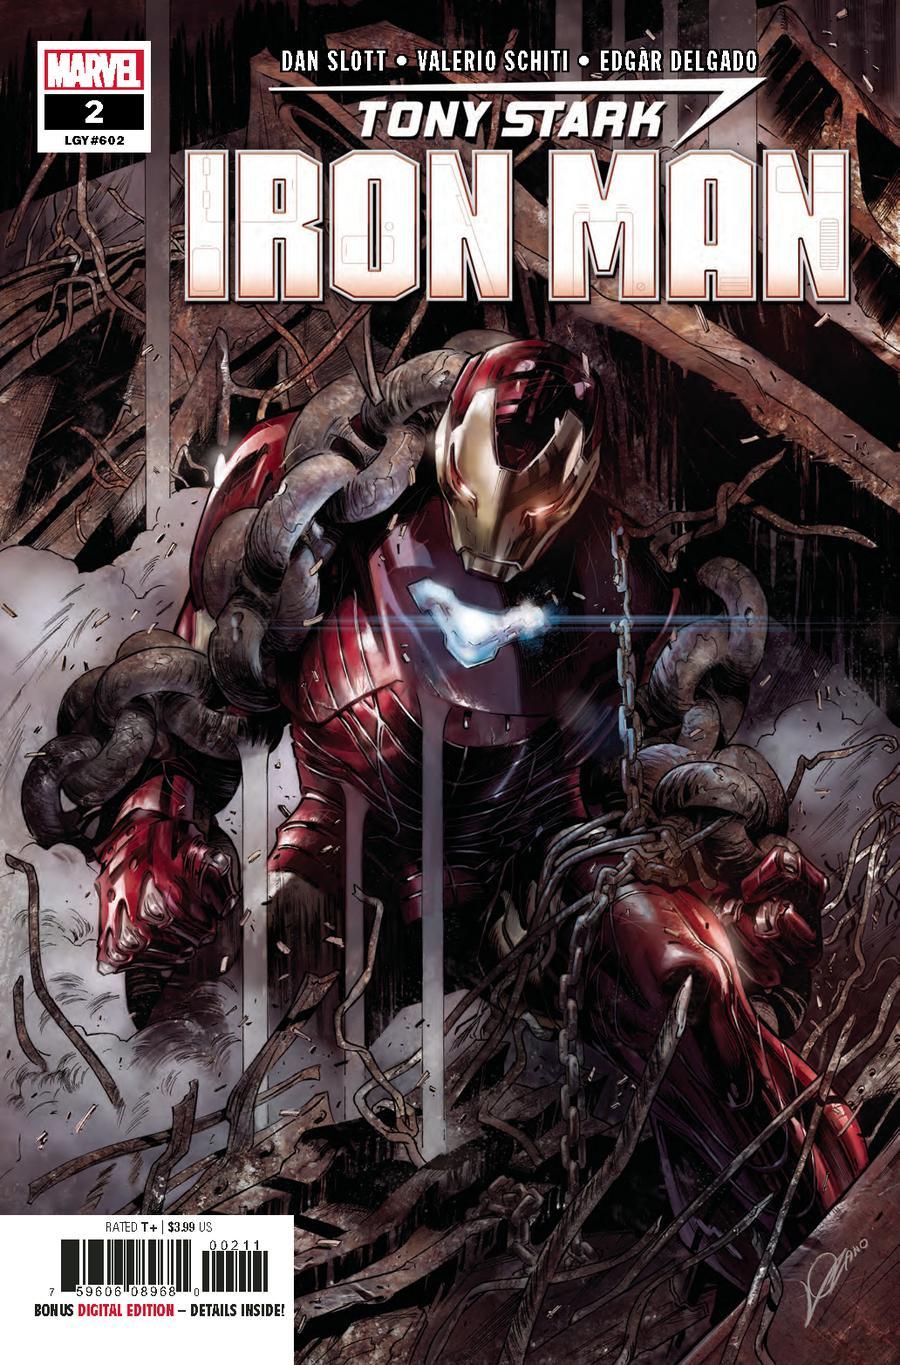 Tony Stark Iron Man Vol. 1 #2